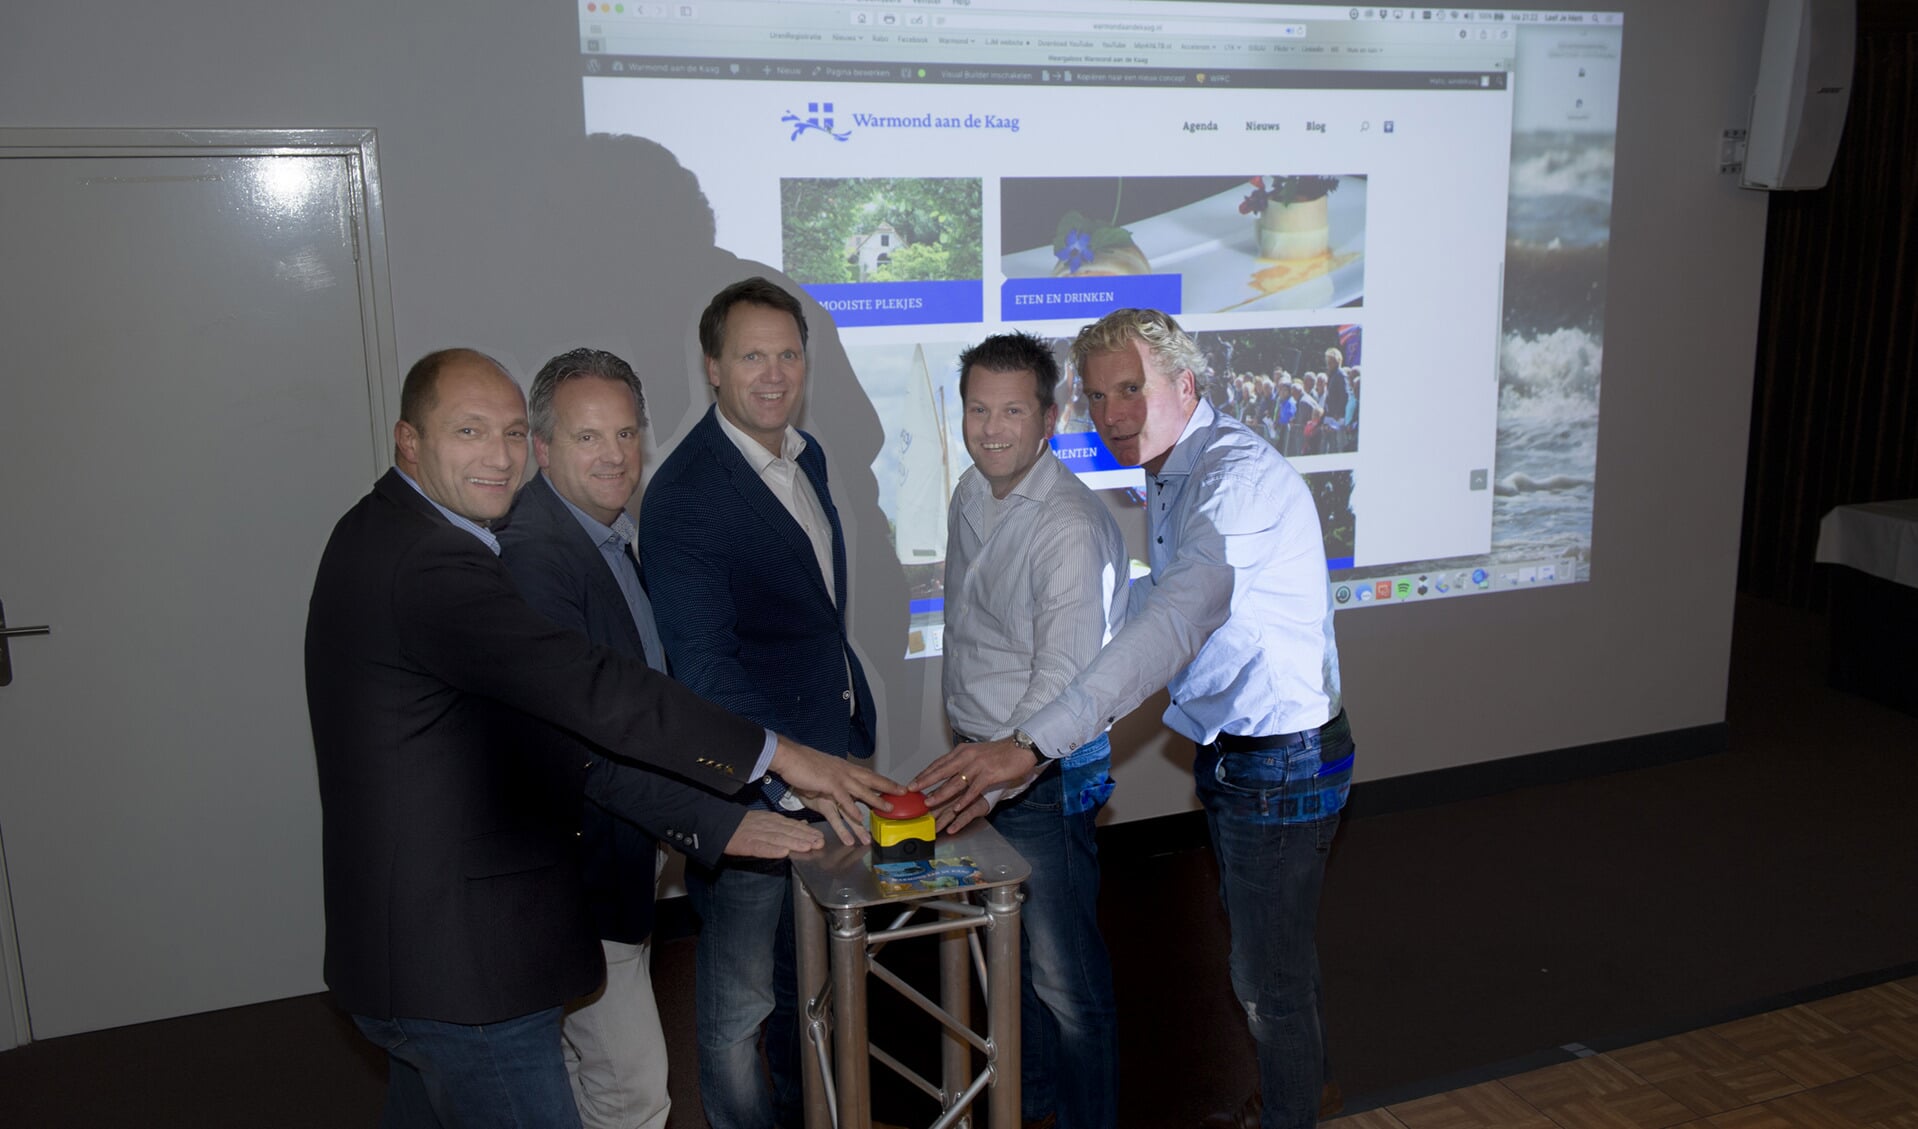 Het bestuur van Stichting Promotie Warmond lanceert www.warmondaandekaag.nl. | Foto: fbps/Peter Schipper